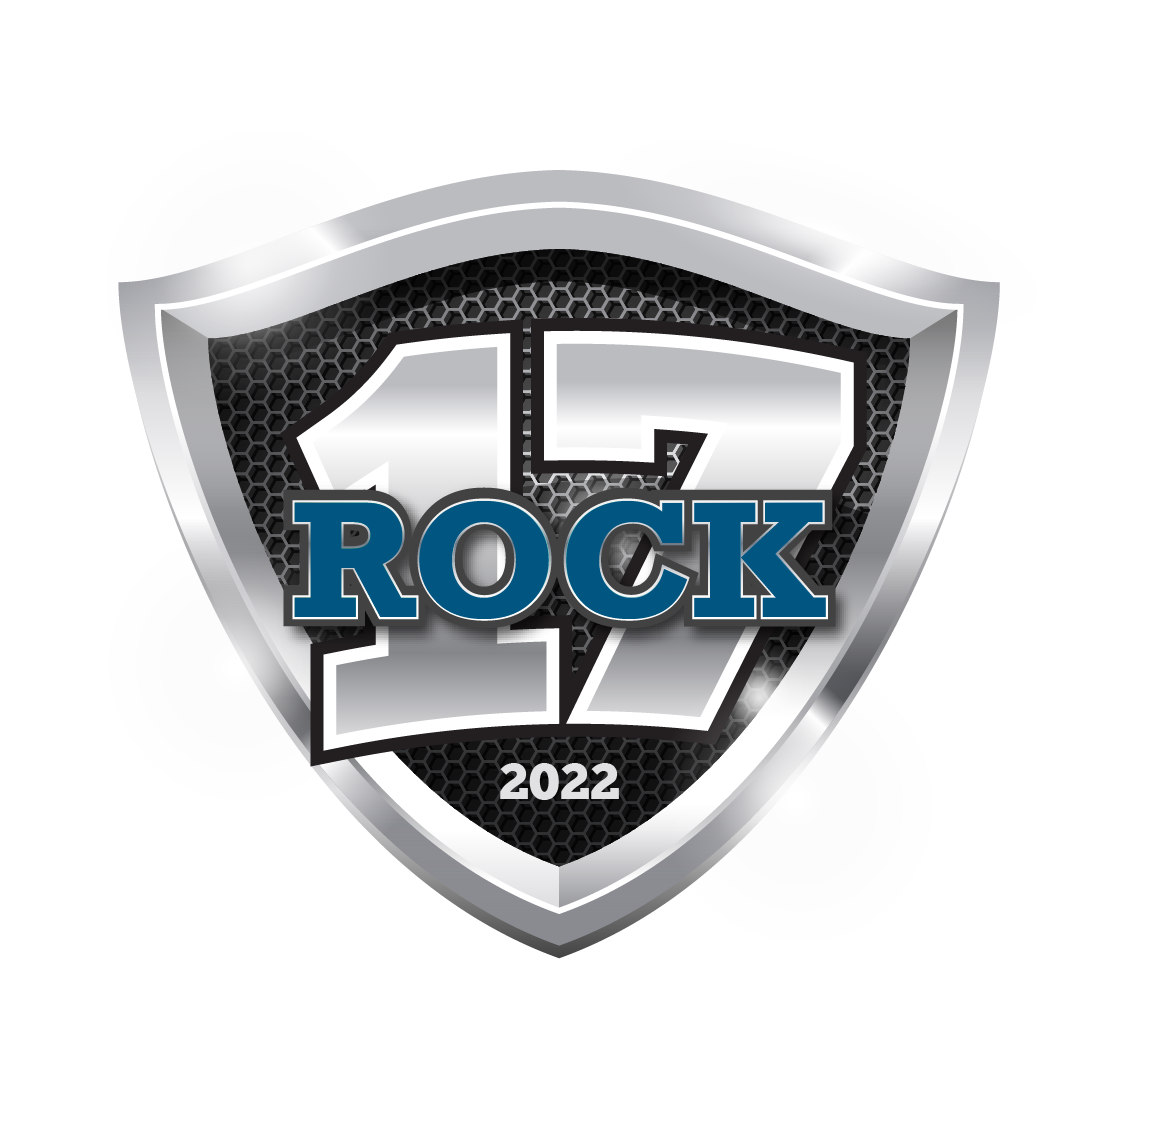 rock17-logo-02.png